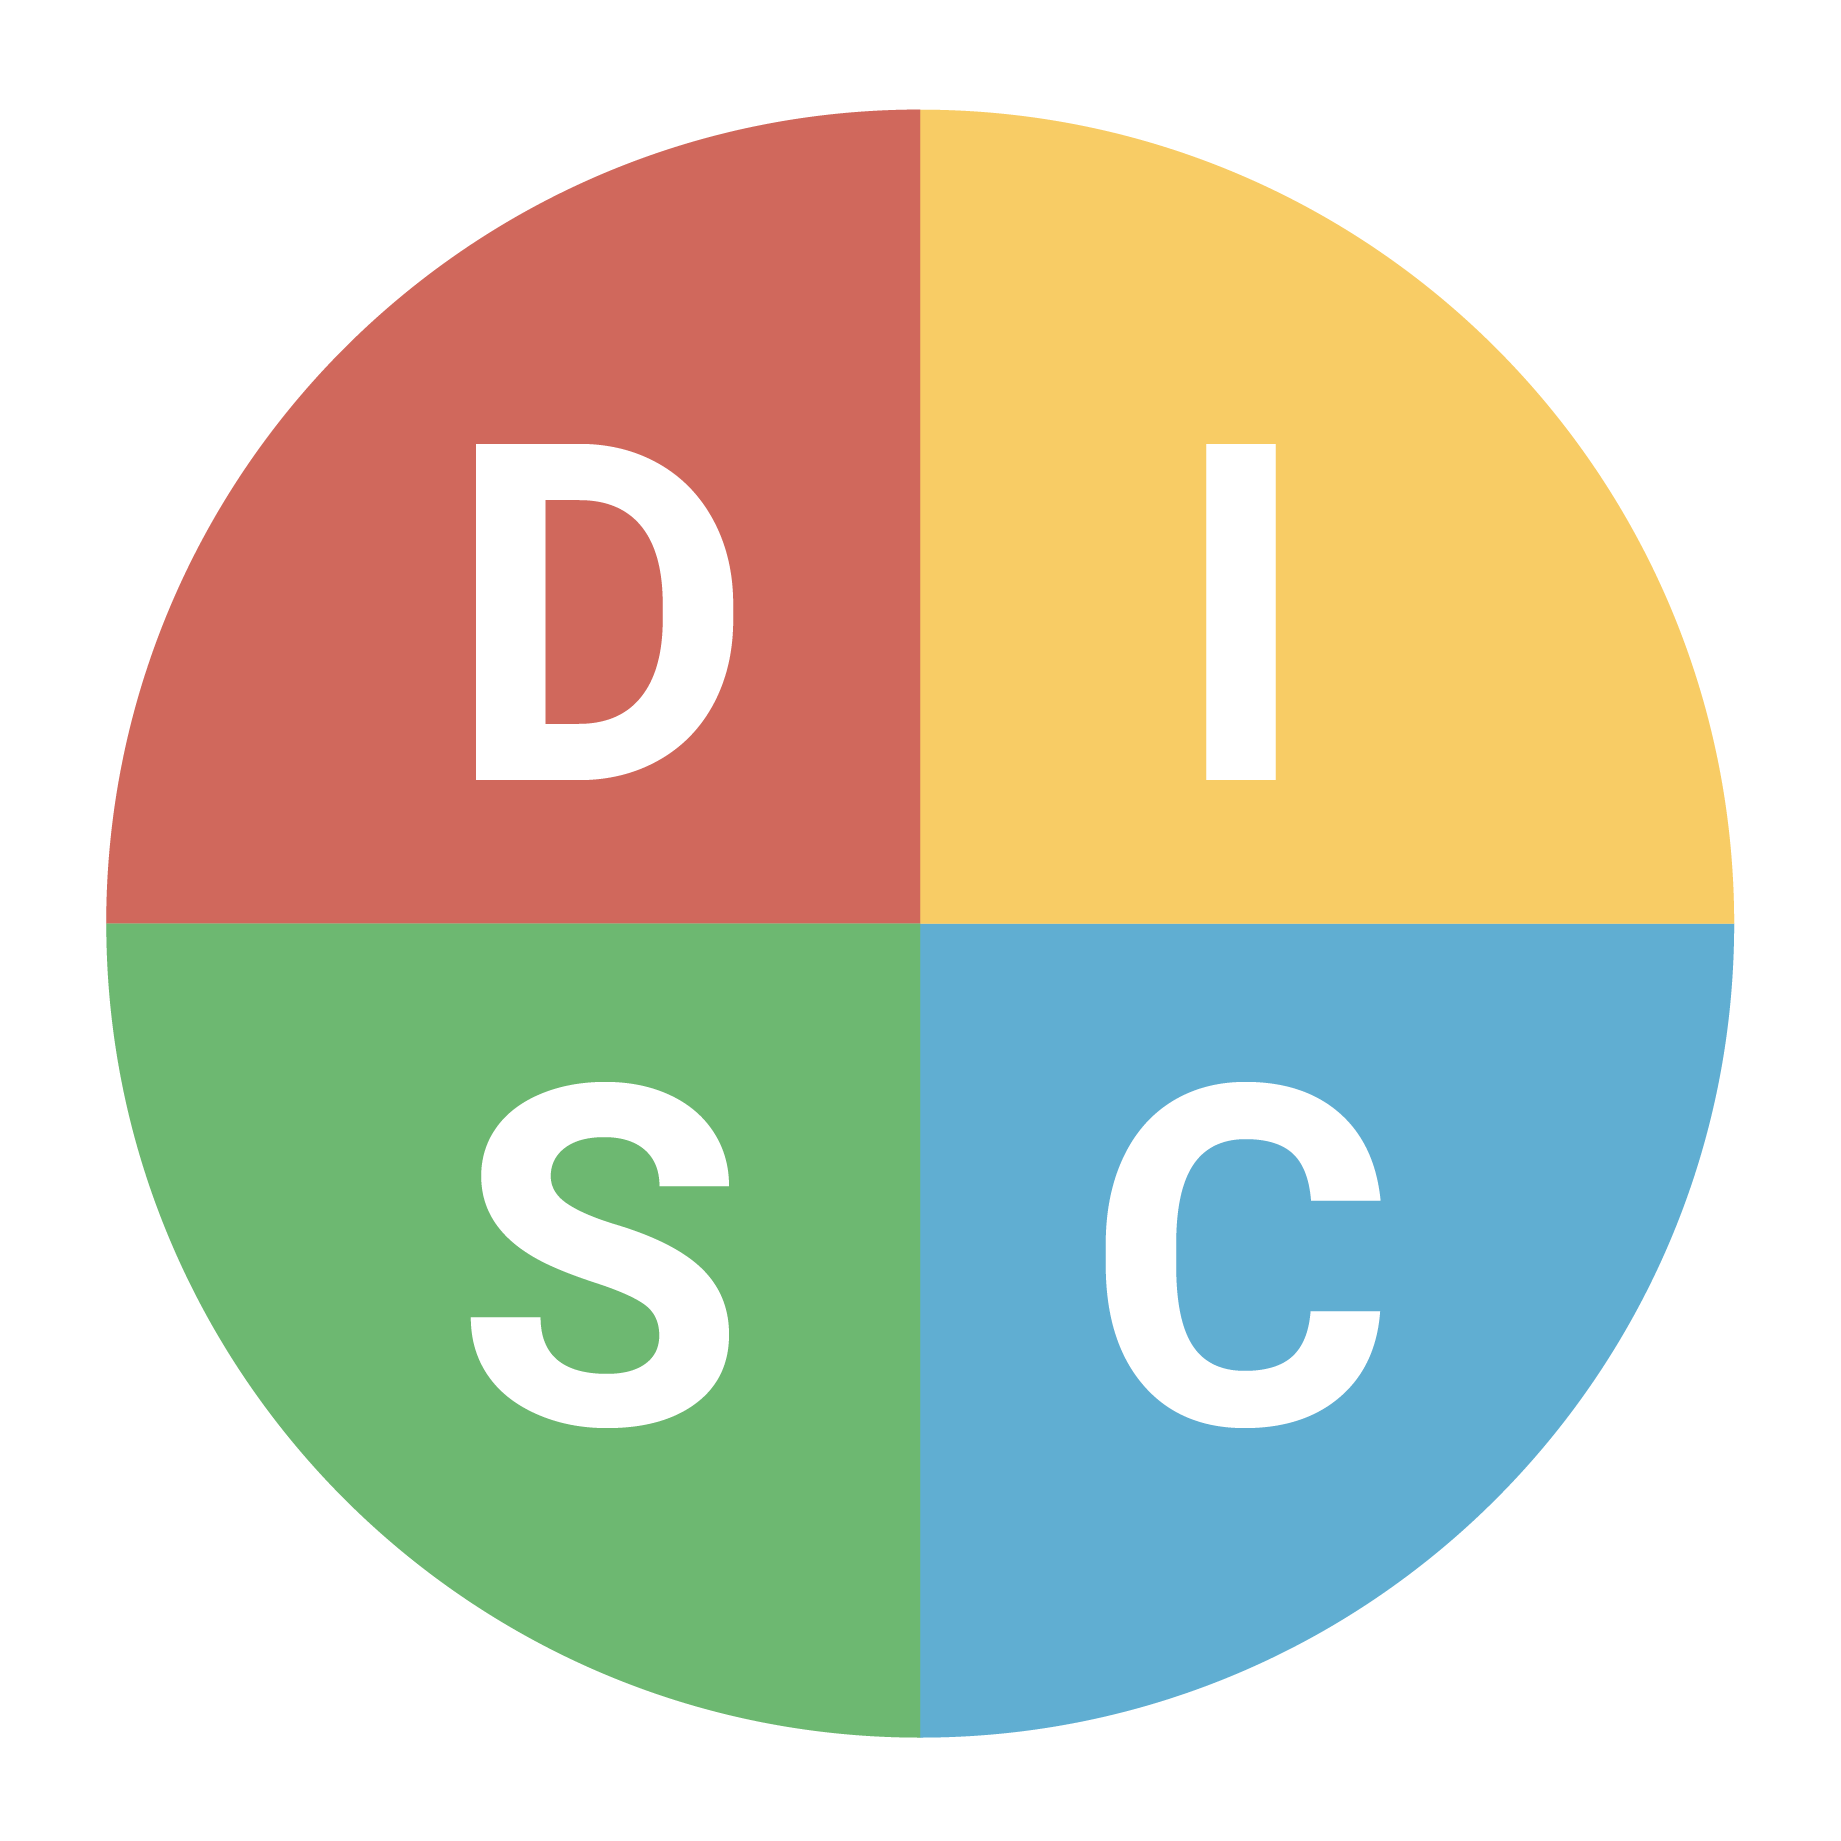 Trắc nghiệm DISC có những ứng dụng và lợi ích gì trong công việc và cuộc sống hàng ngày?